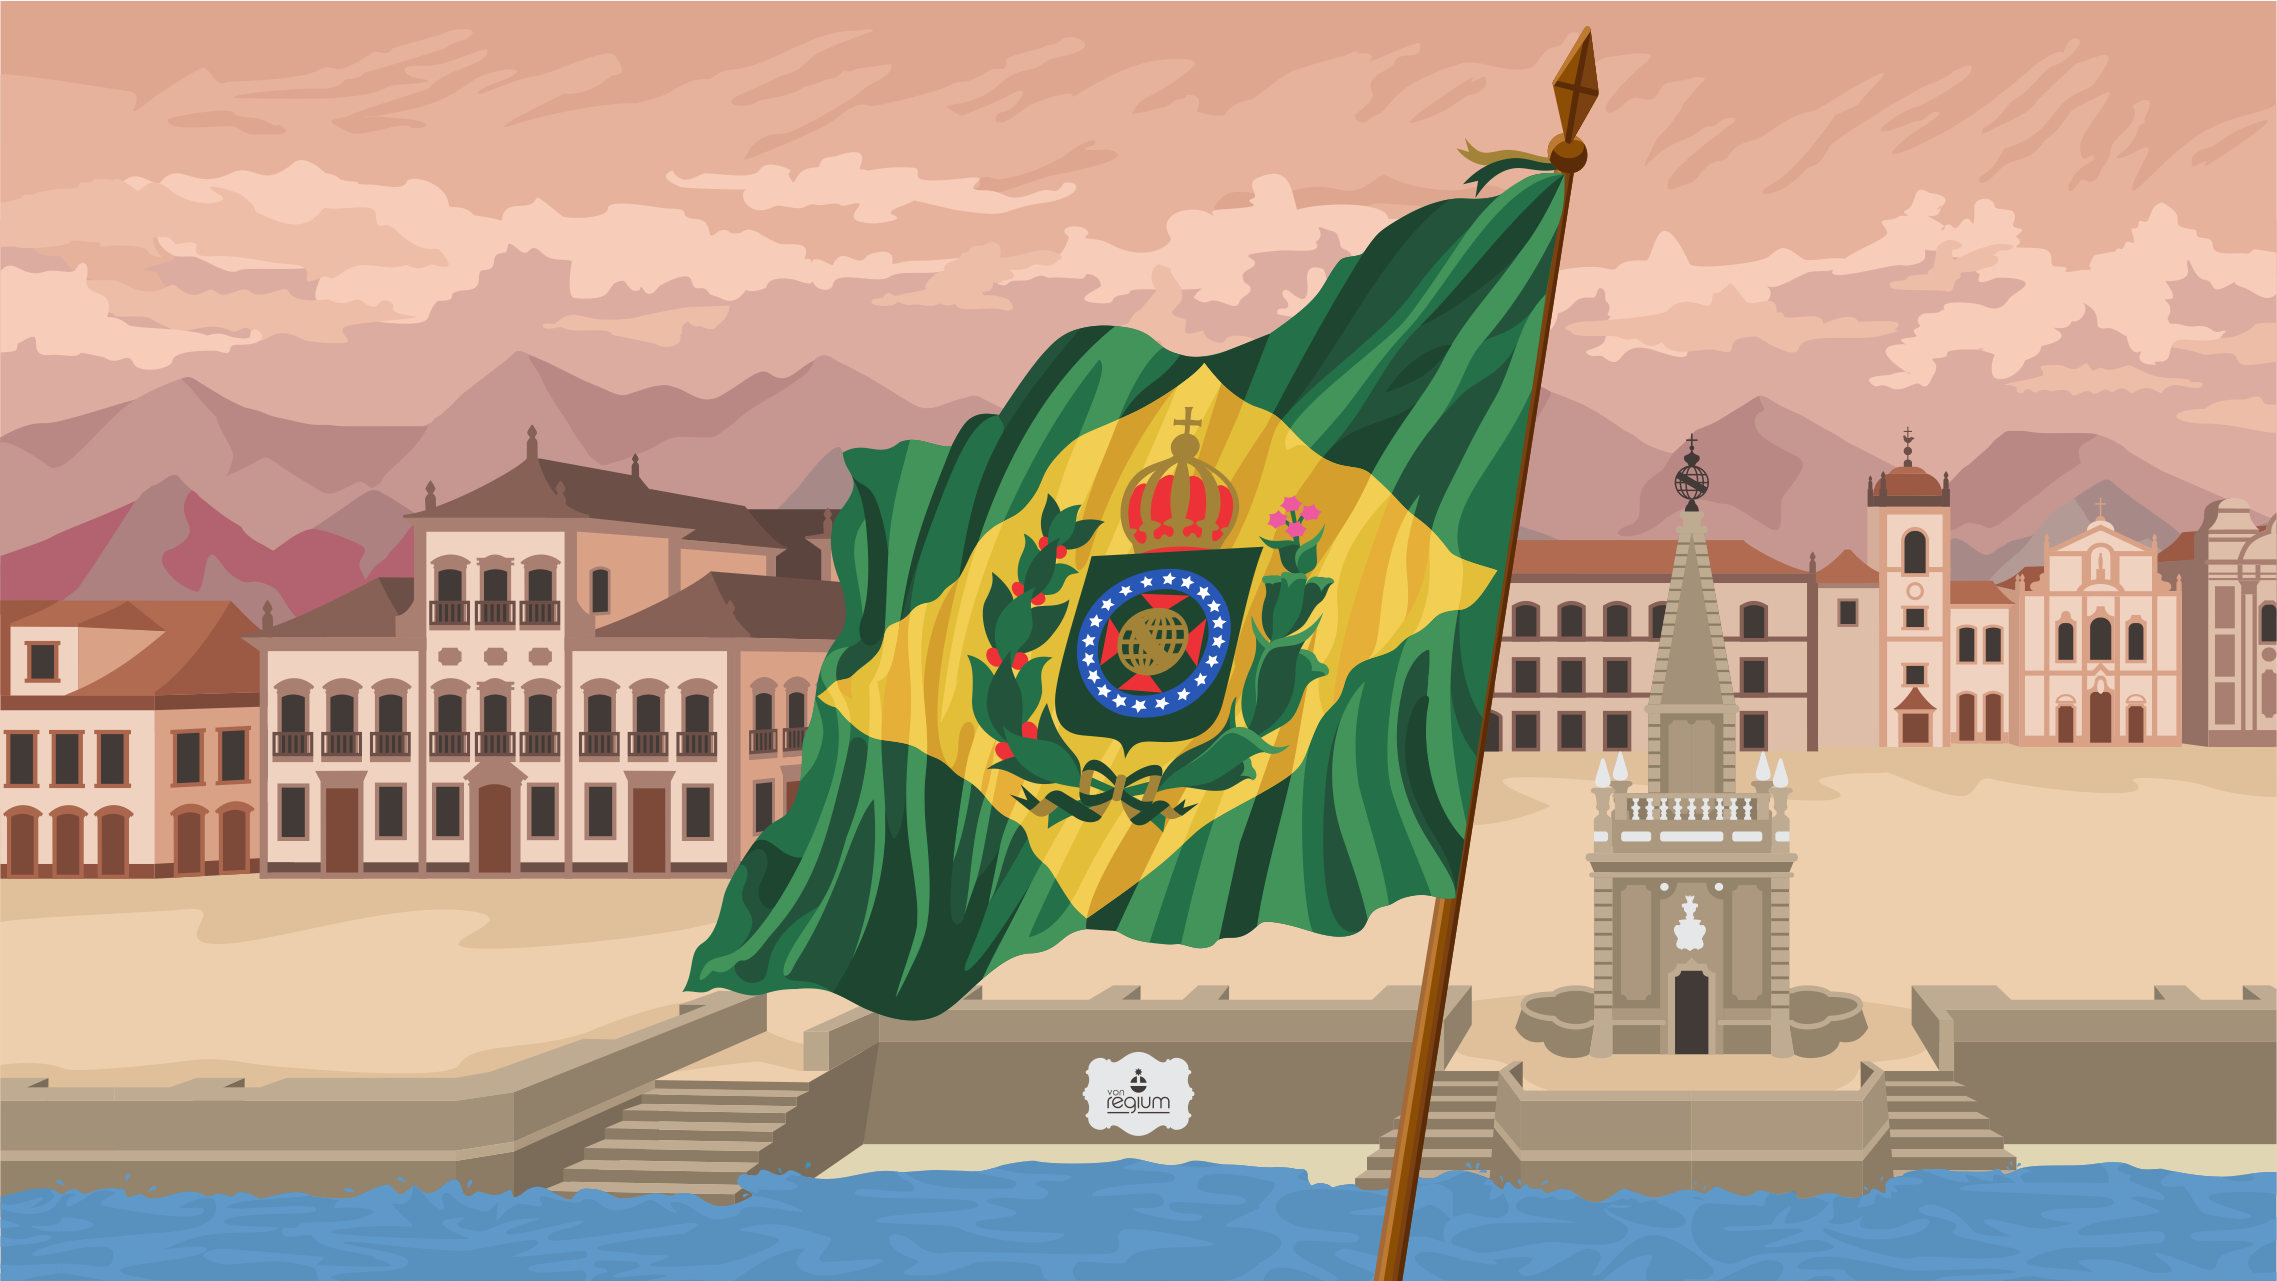 Wallpaper Bandeira Império do Brasil